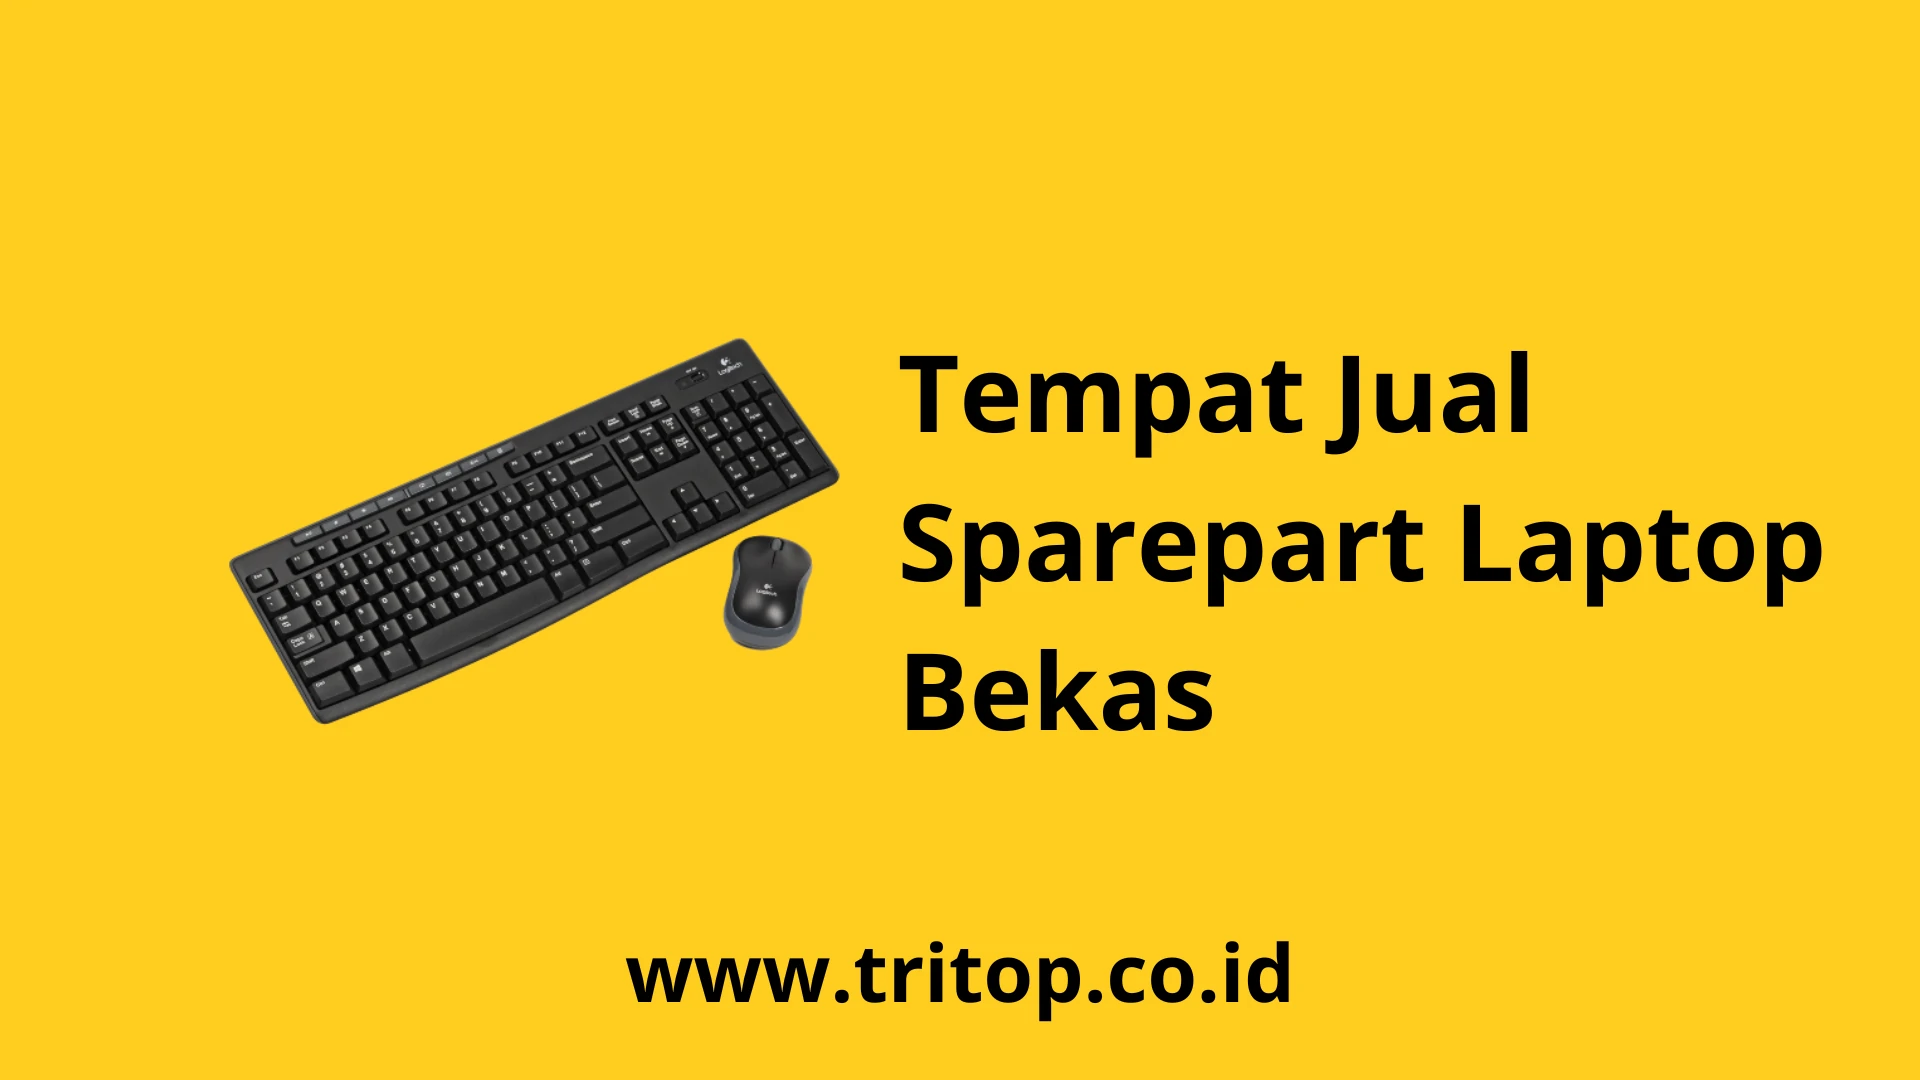 Jual Sparepart Laptop bekas Tritop.co.id